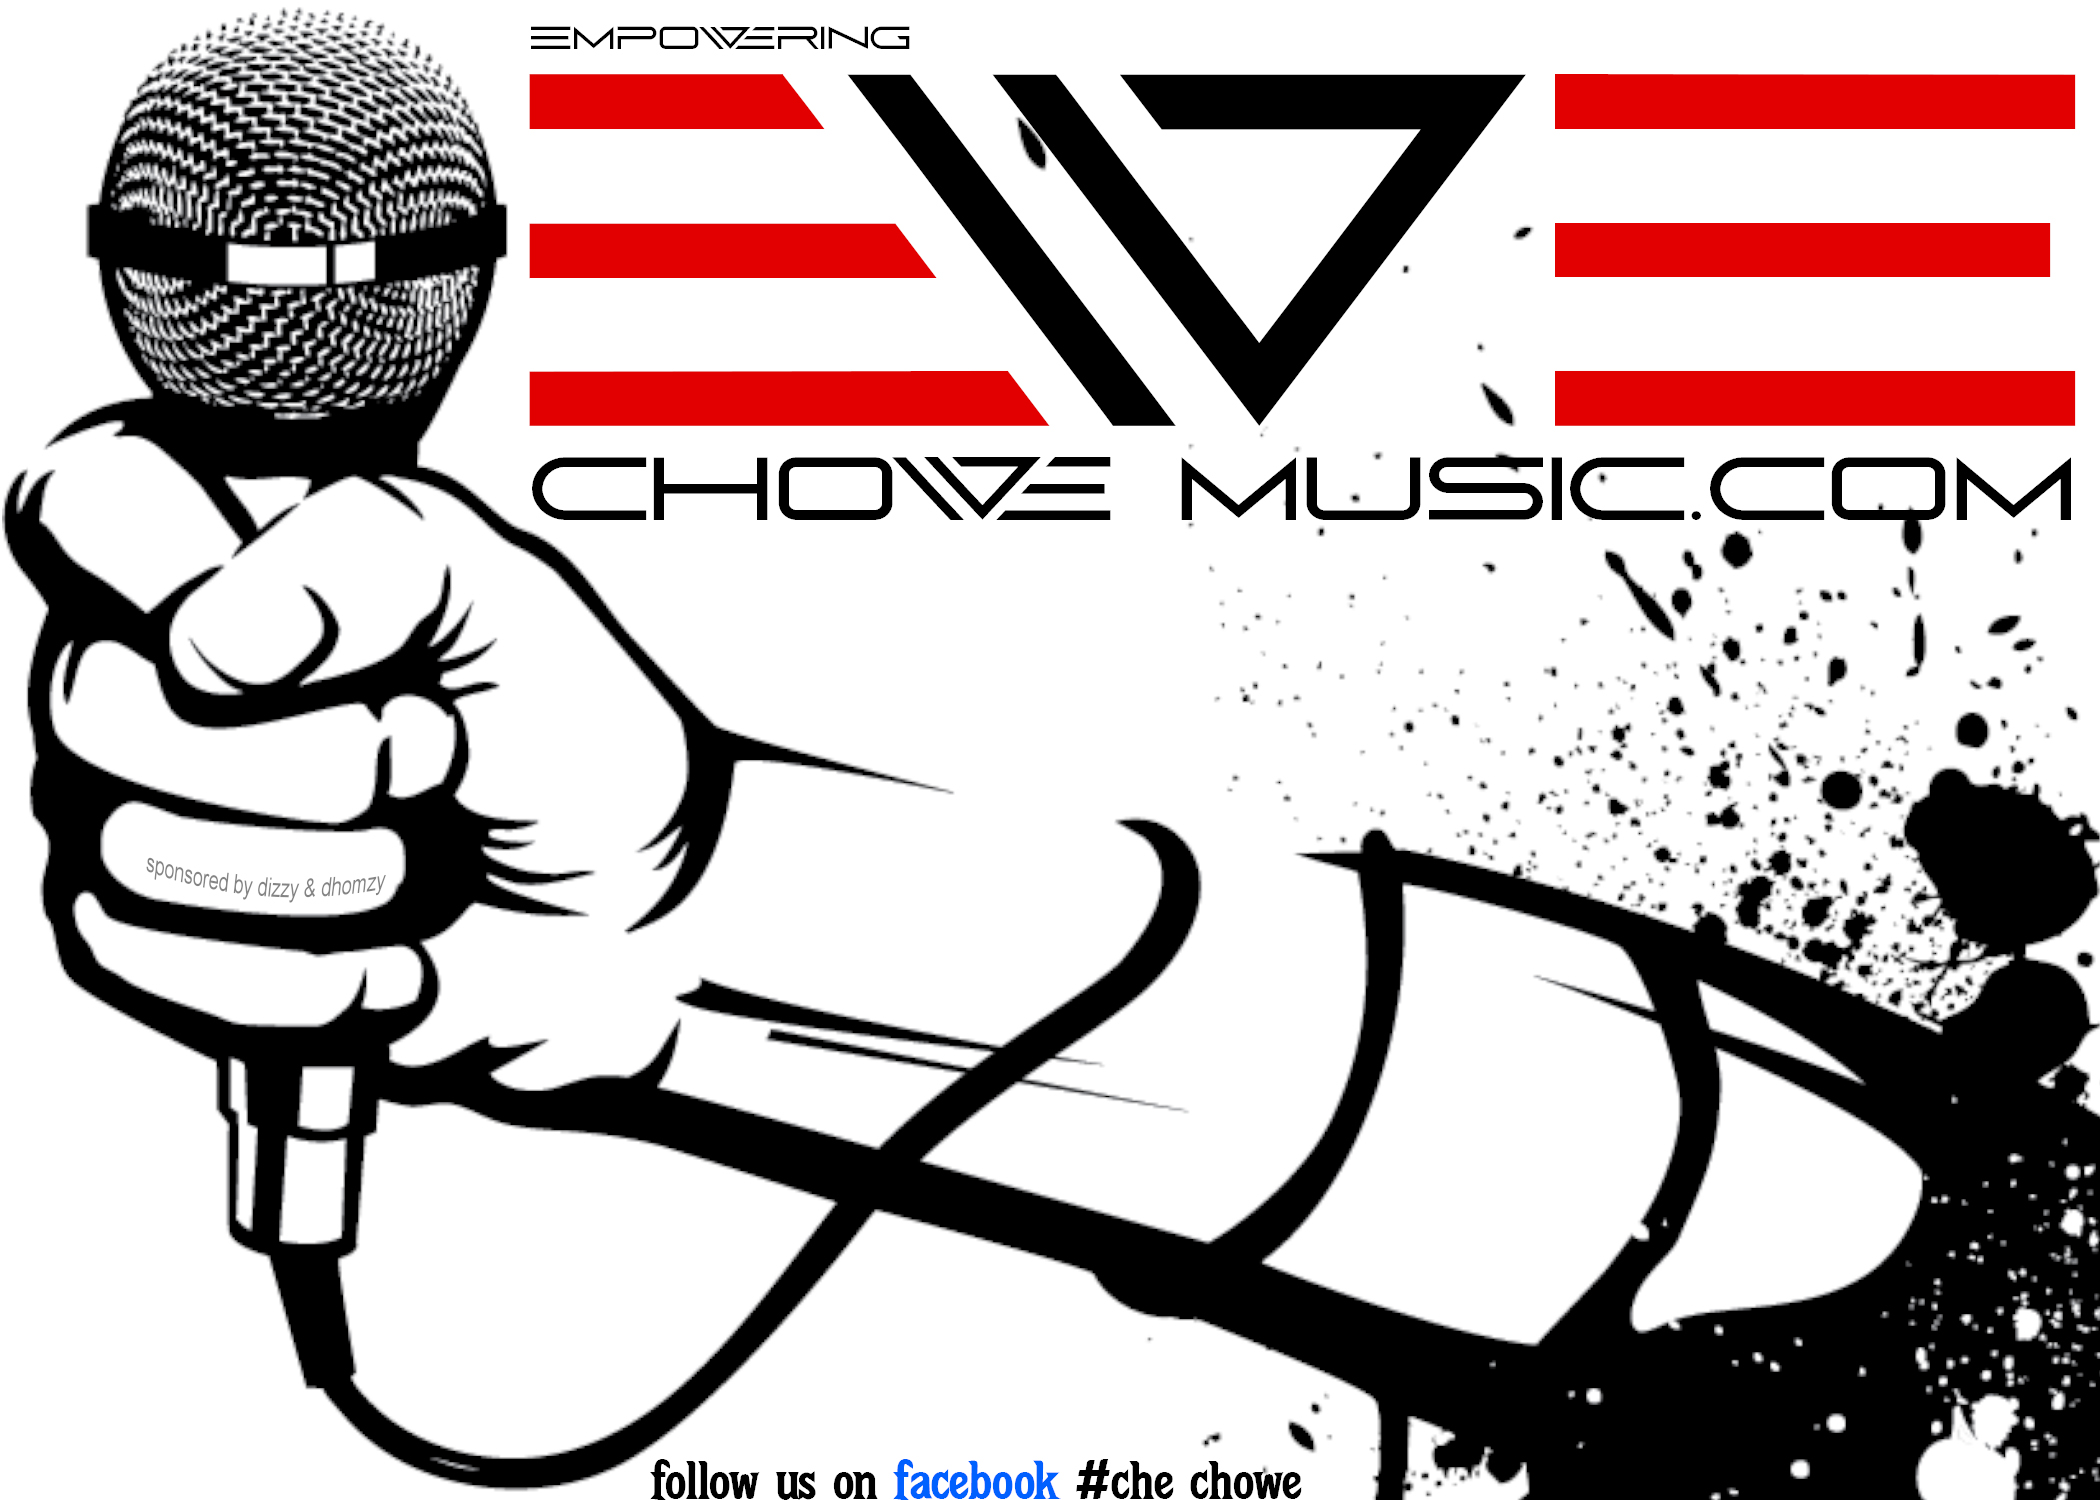 Chowe Music